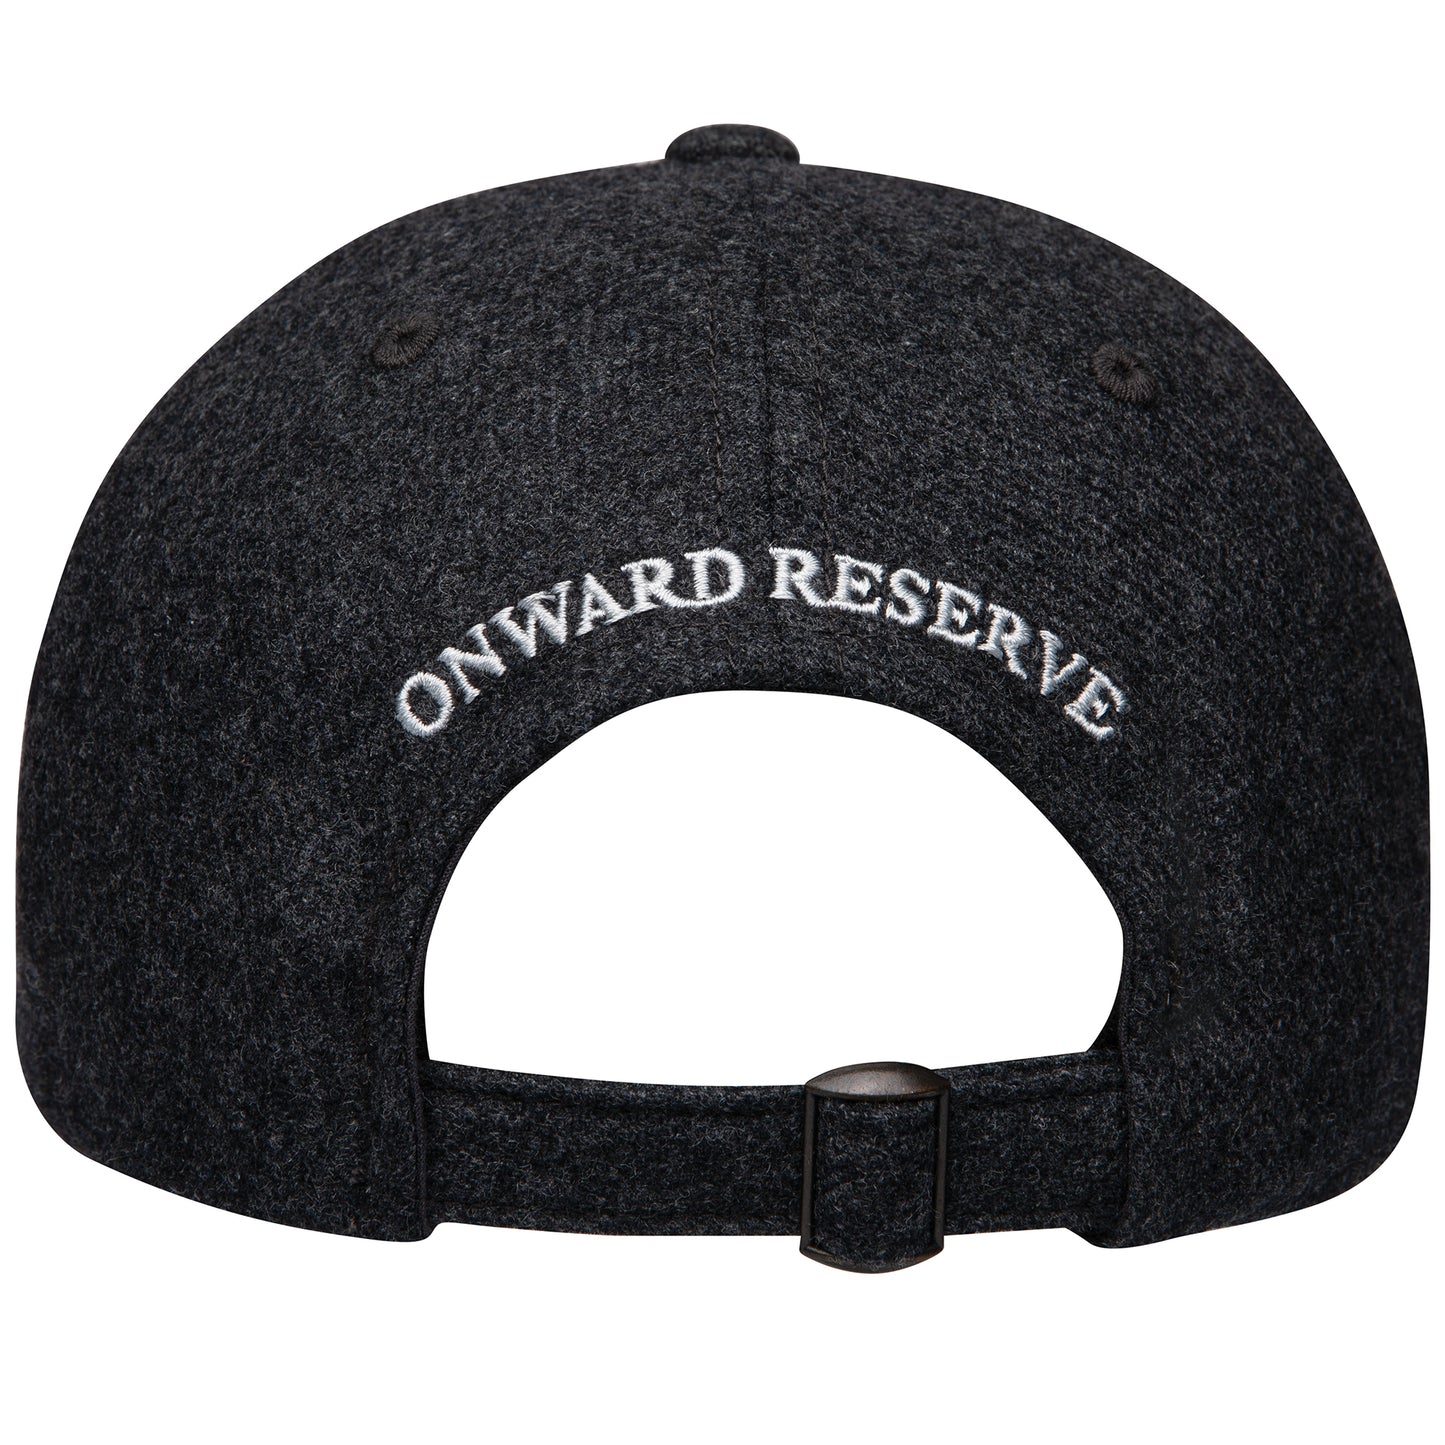 Onward Reserve Wool Hat